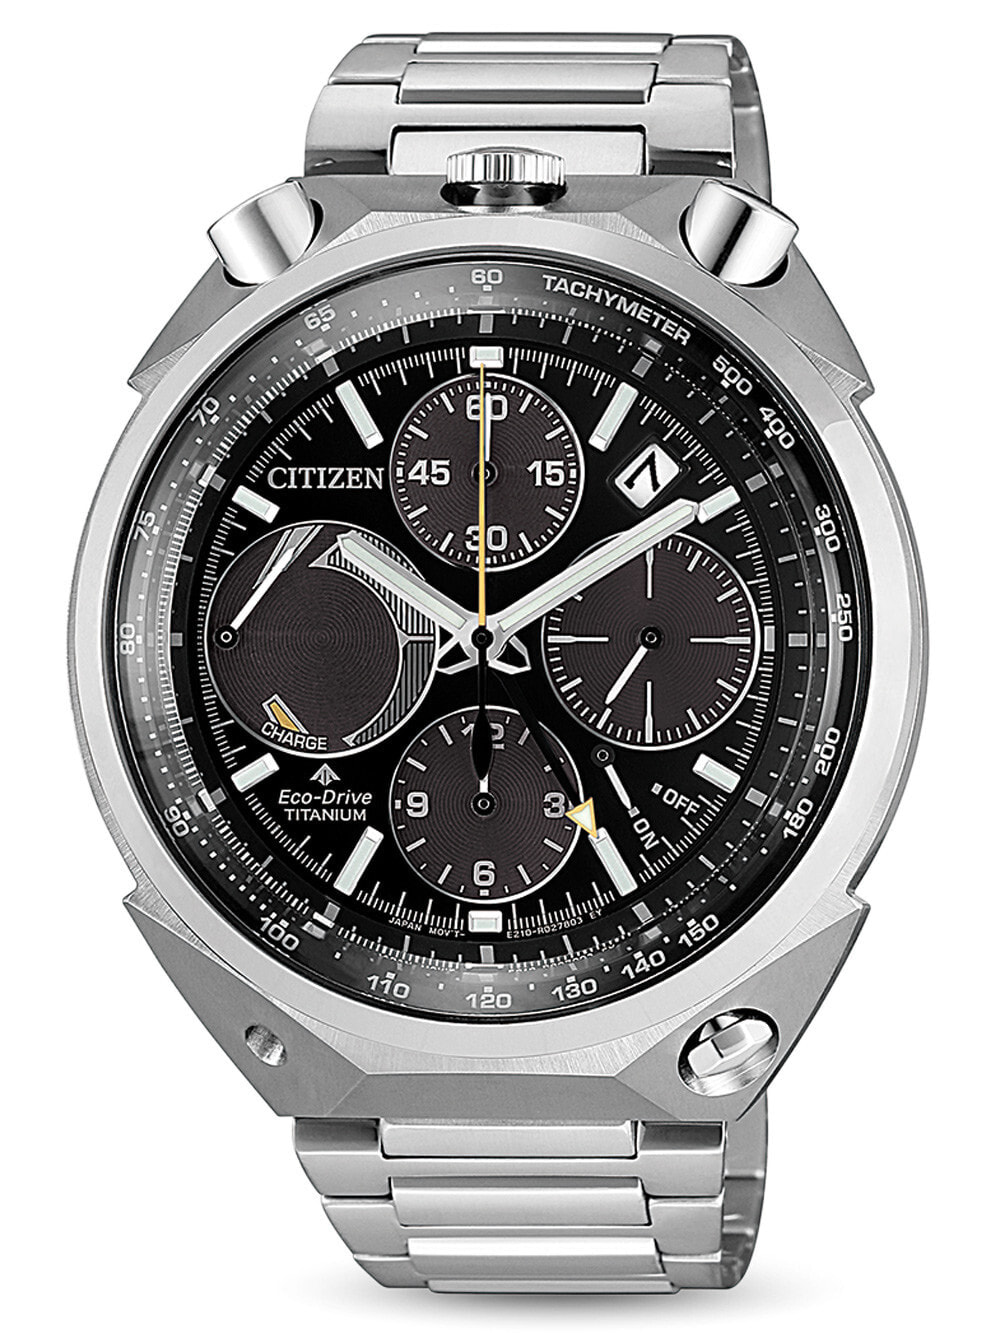 Мужские наручные часы с серебряным браслетом Citizen AV0080-88E Super-Titanium Eco-Drive chrono 43mm 20ATM